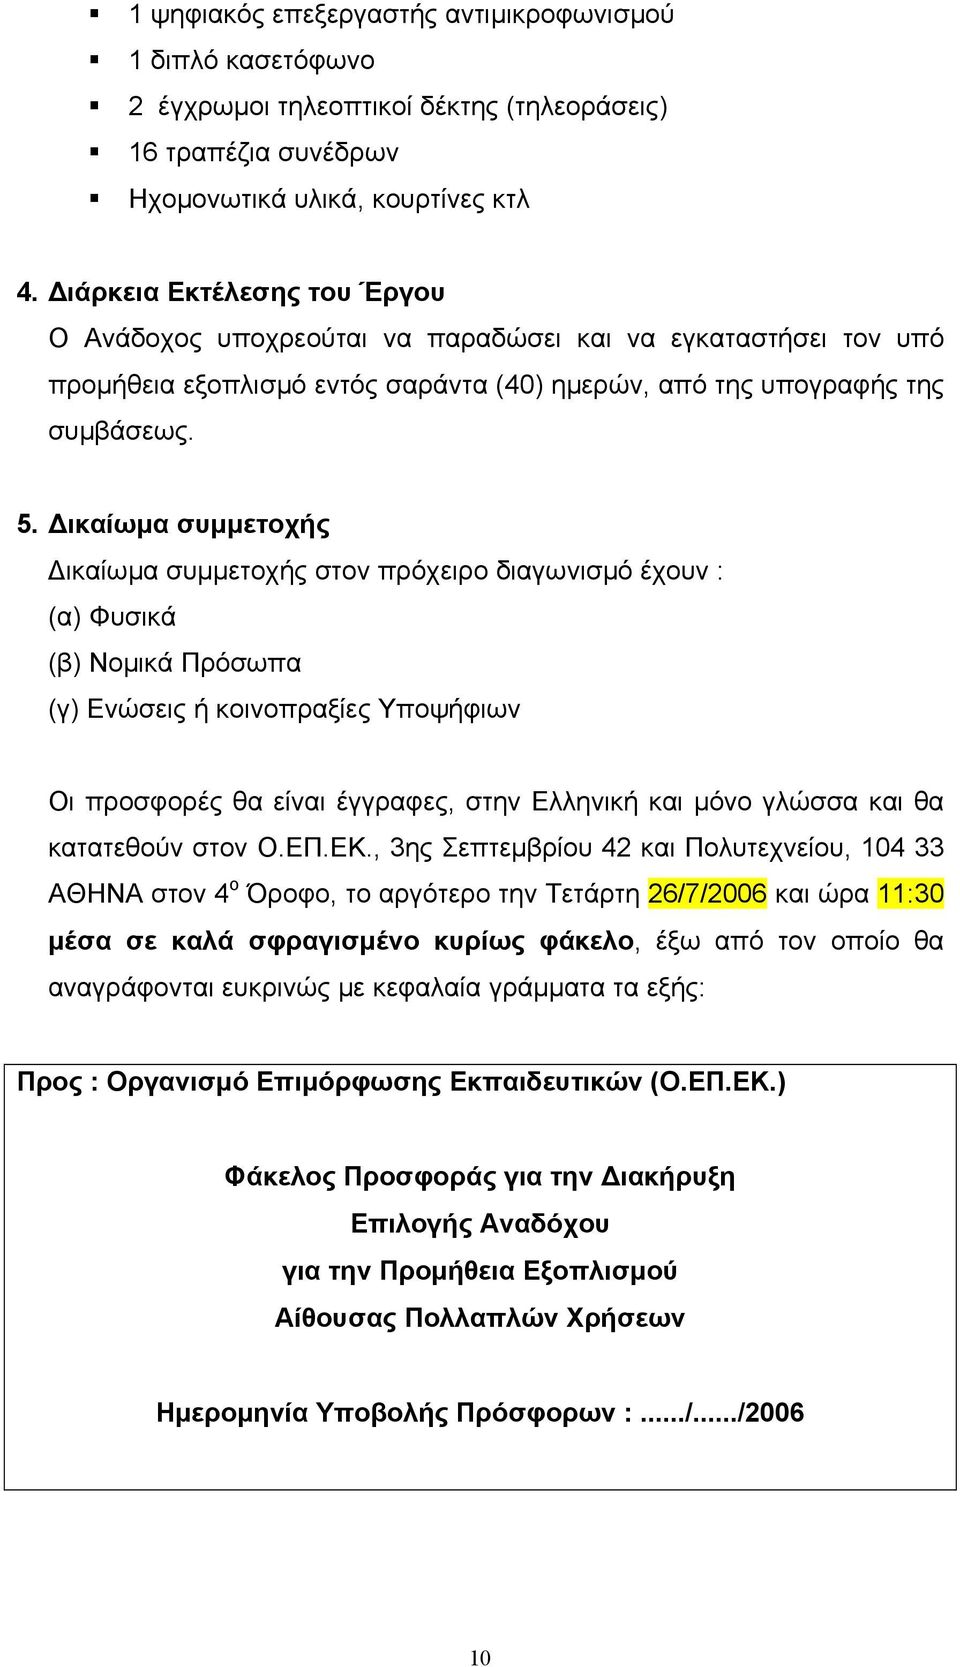 ικαίωµα συµµετοχής ικαίωµα συµµετοχής στον πρόχειρο διαγωνισµό έχουν : (α) Φυσικά (β) Νοµικά Πρόσωπα (γ) Ενώσεις ή κοινοπραξίες Υποψήφιων Οι προσφορές θα είναι έγγραφες, στην Ελληνική και µόνο γλώσσα